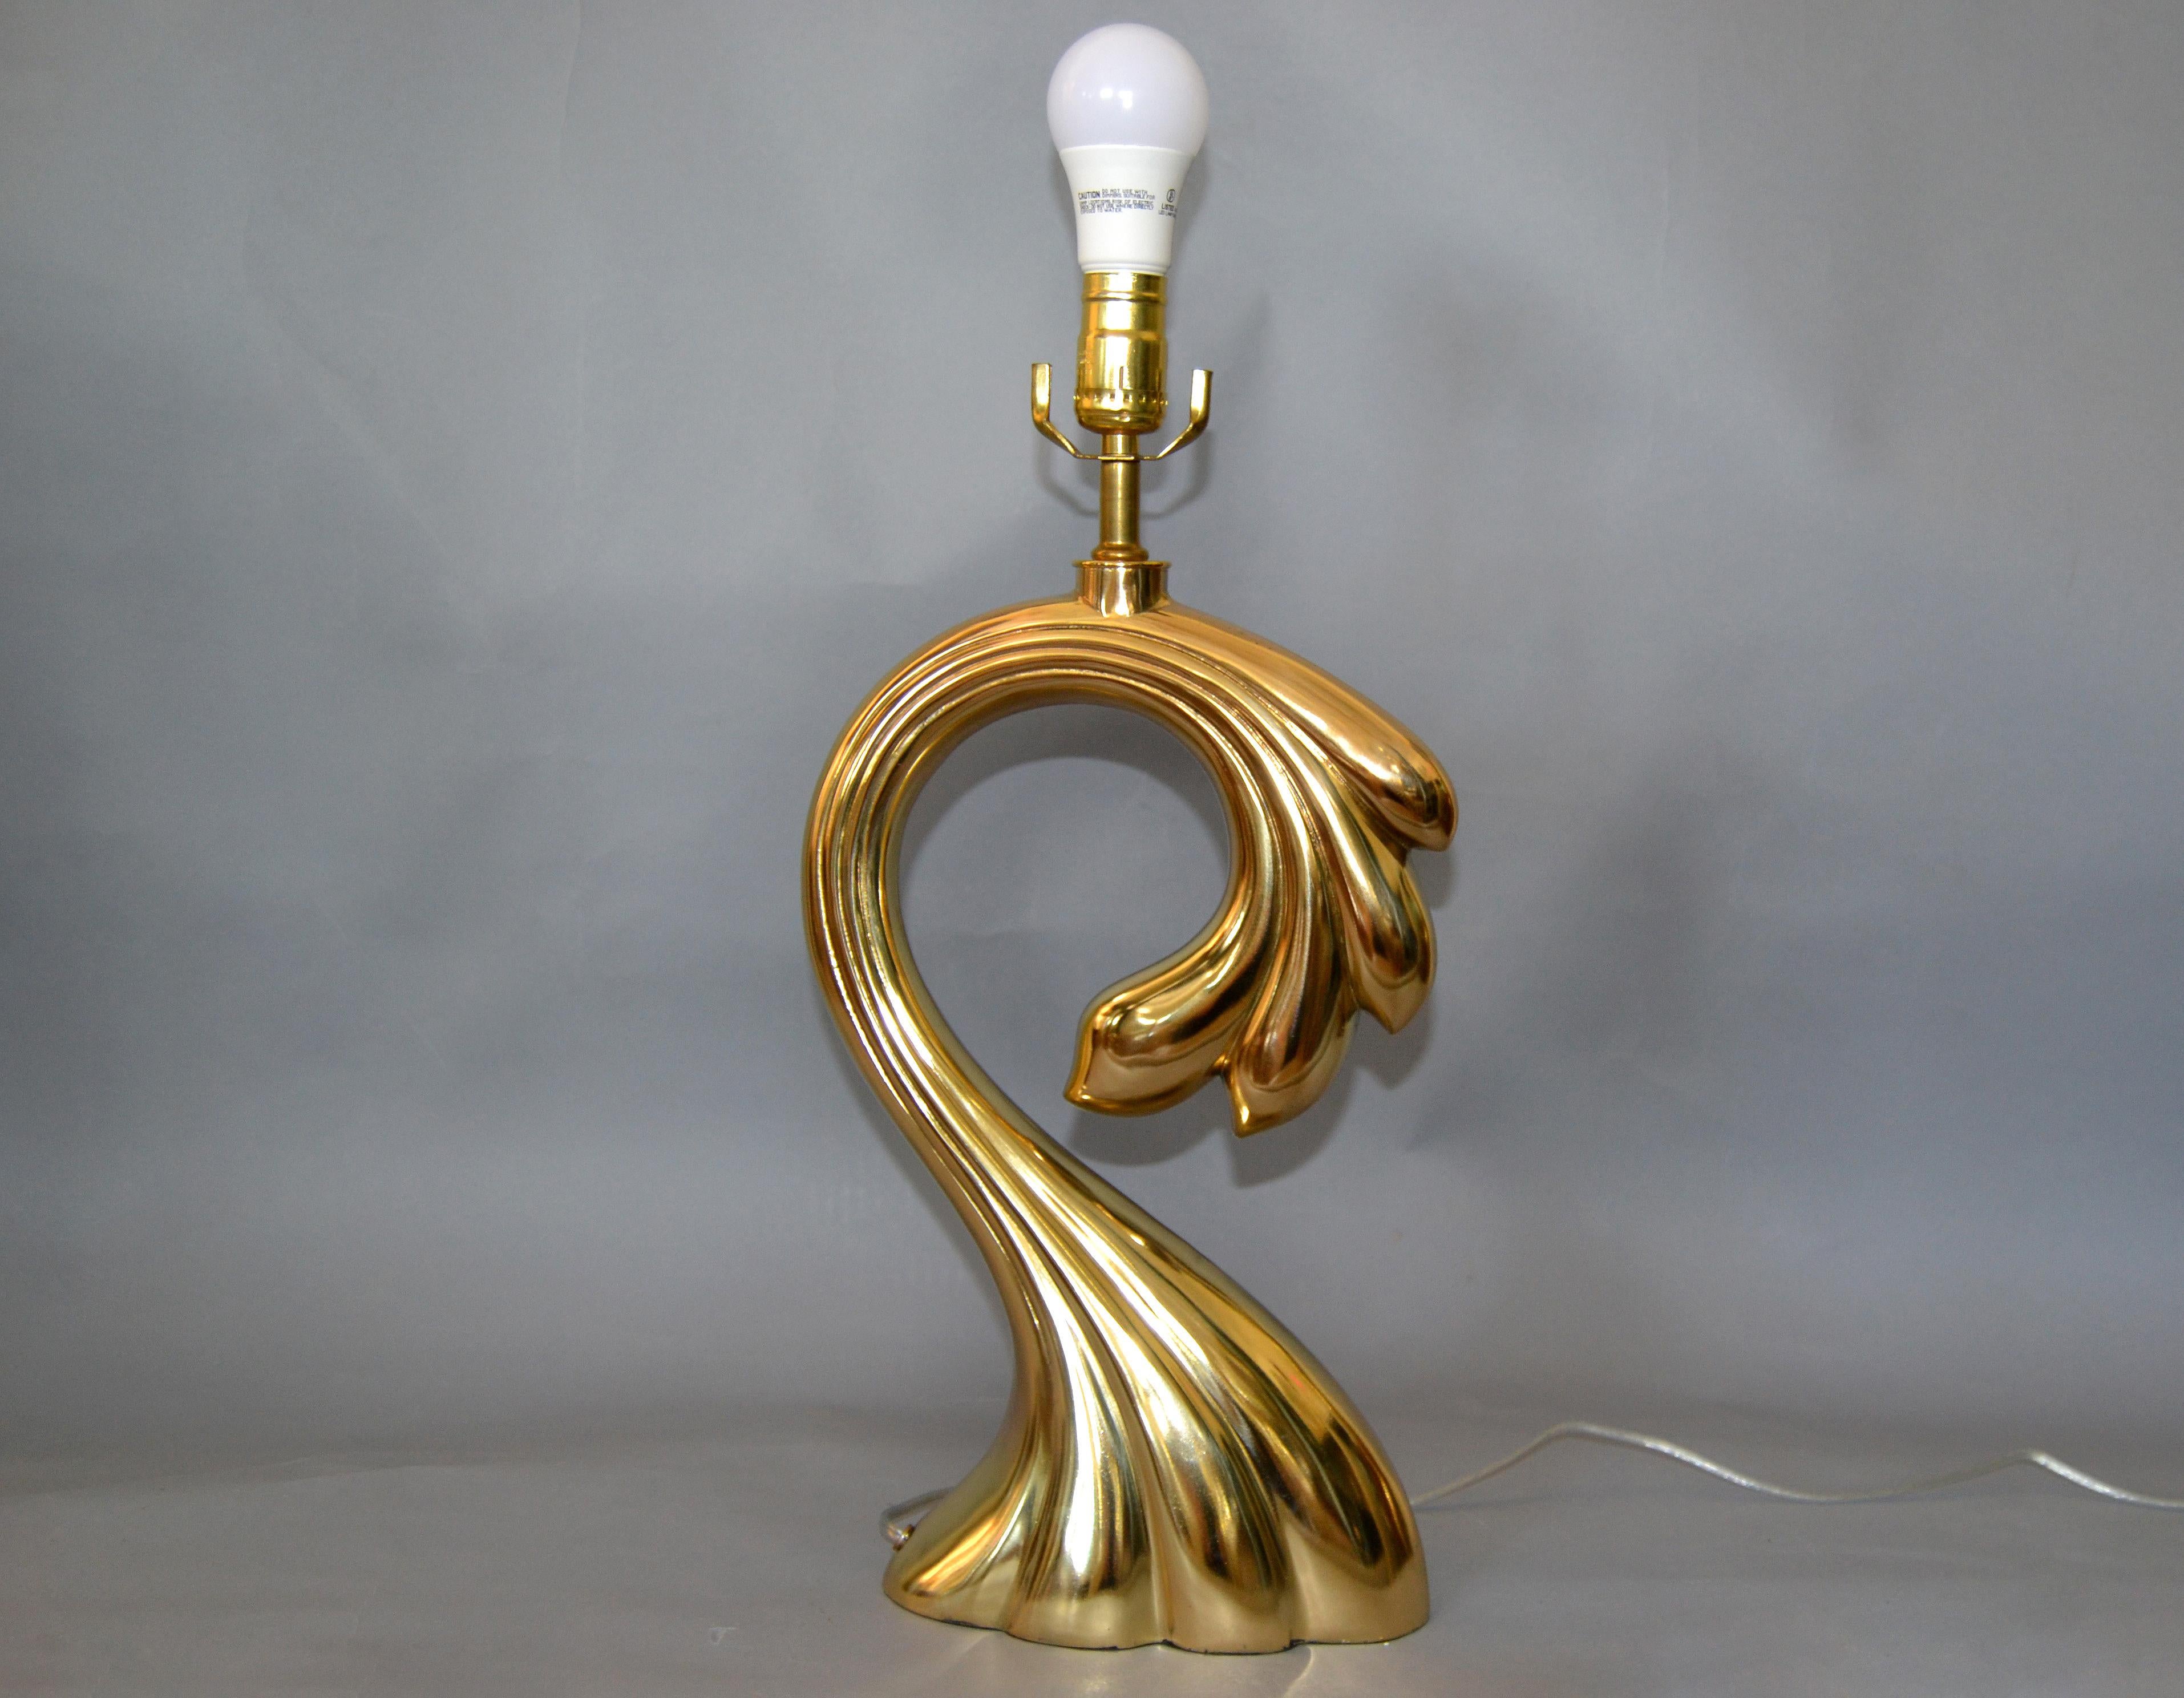 Wir bieten eine skulpturale Mid-Century Modern Tischlampe aus Messing aus den 1970er Jahren in der Art von Pierre Cardin.
Neu verkabelt und mit einer max. 75-Watt-Glühbirne.
Hinweis: Wir haben keinen Schirm, keine Harfe und keinen Endknopf